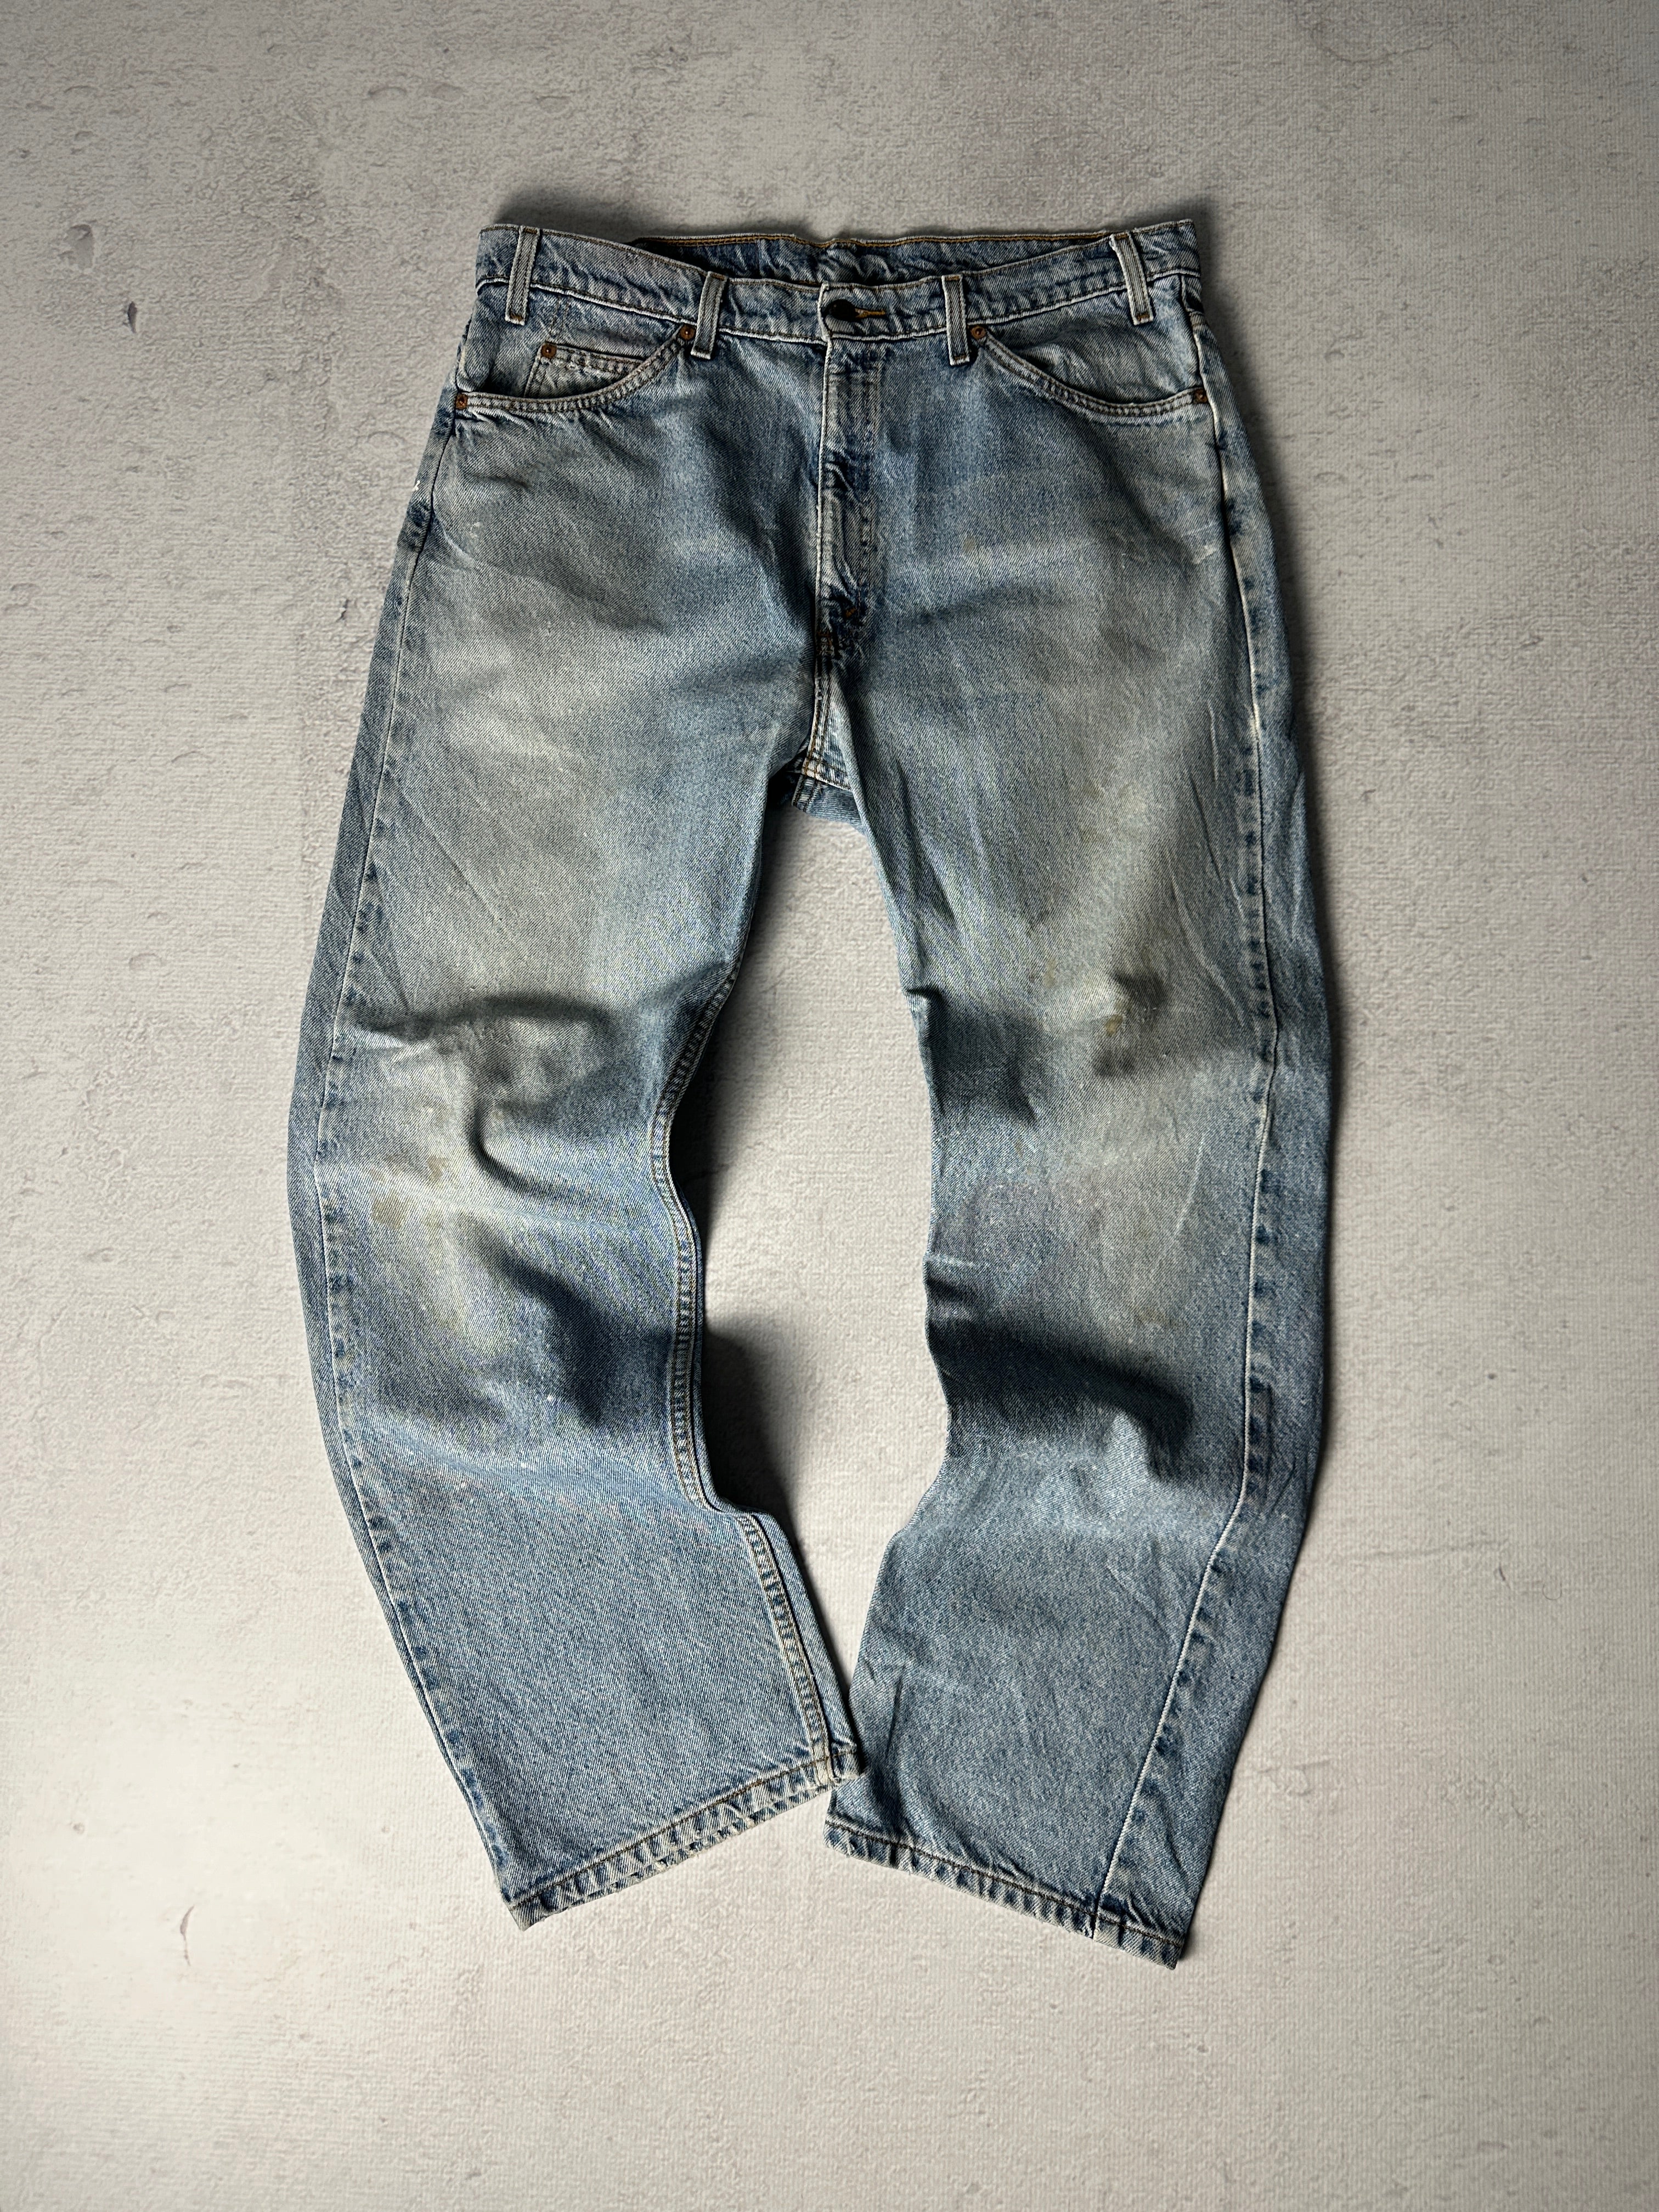 Vintage Levis Orange Tab Jeans - Men's 38W32L